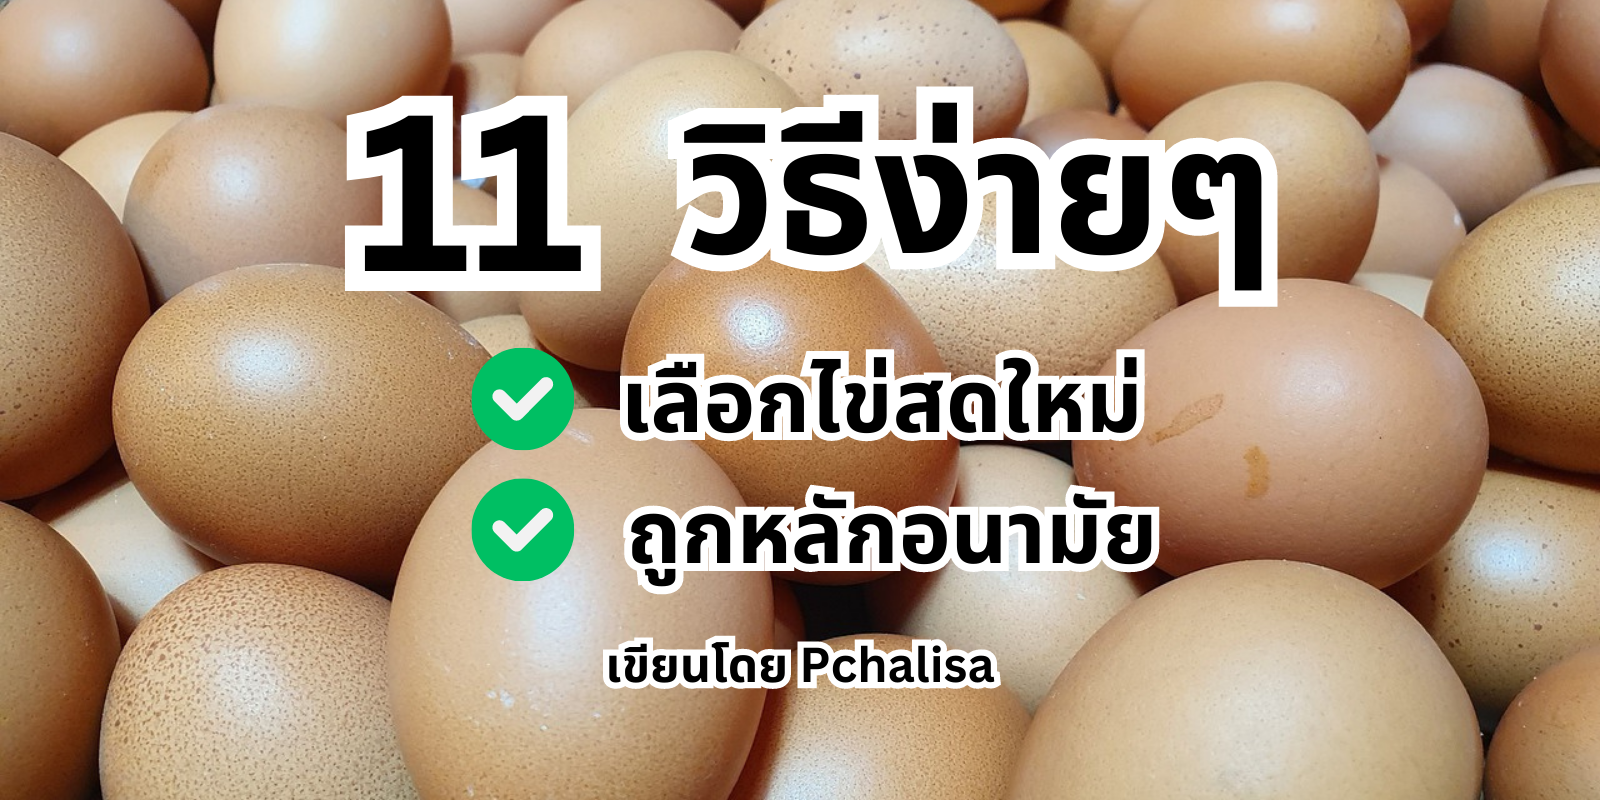 บอกต่อ! 11 วิธีเลือกไข่ไก่ แบบสดใหม่ ไม่เน่า คุณภาพดี และปลอดภัย